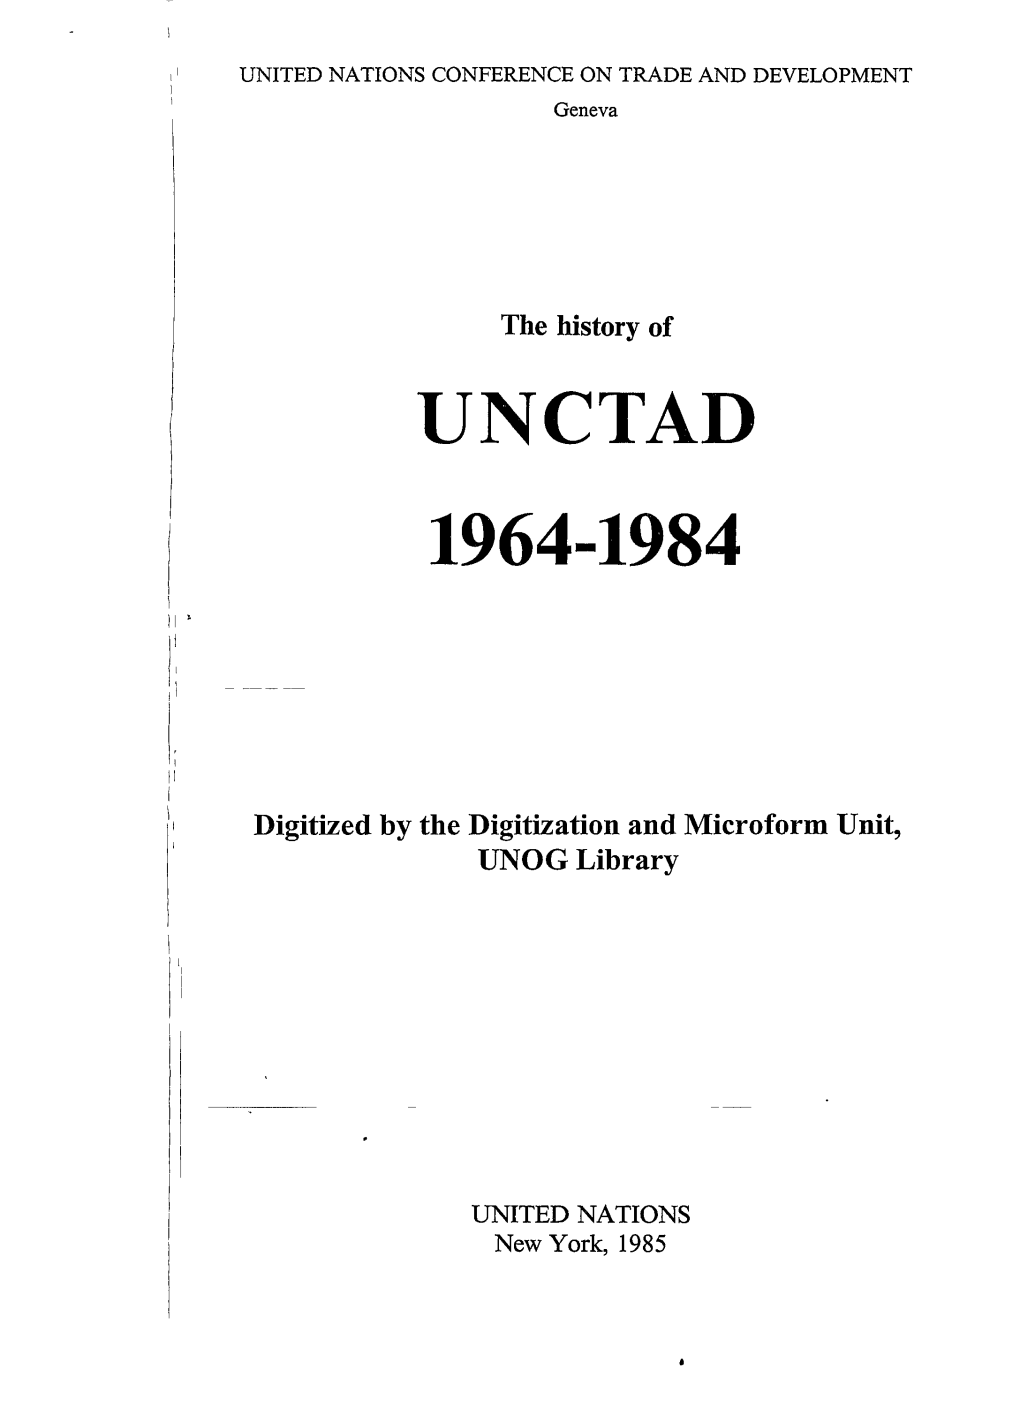 Unctad 1964-1984